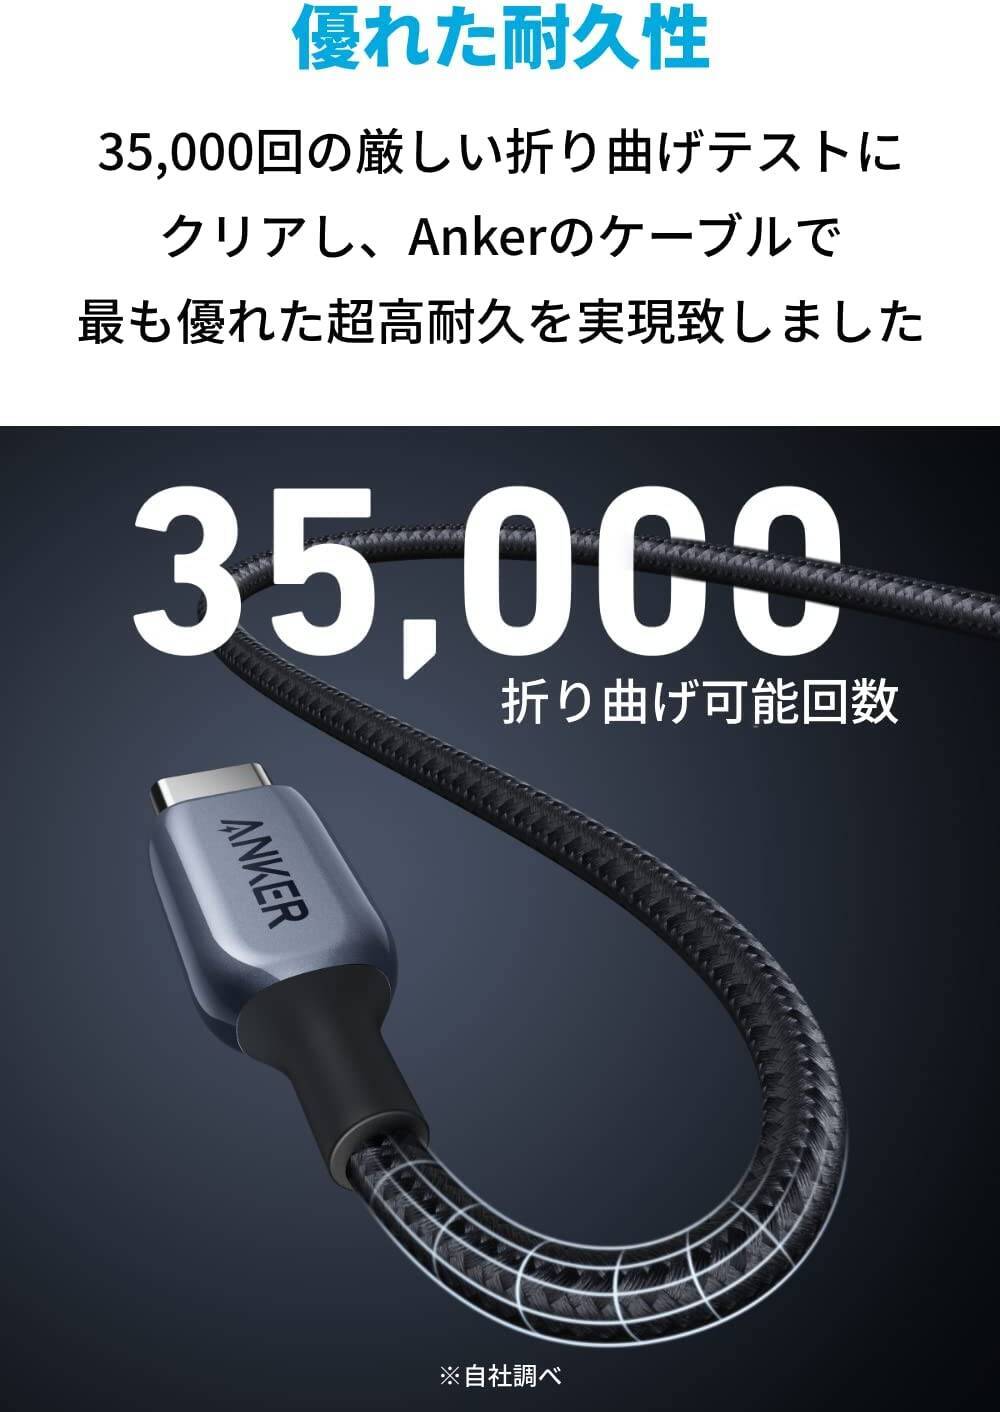 【35%OFF】最大140W対応高耐久ナイロン 「Anker 765 USB-C & USB-C ケーブル」がセール中